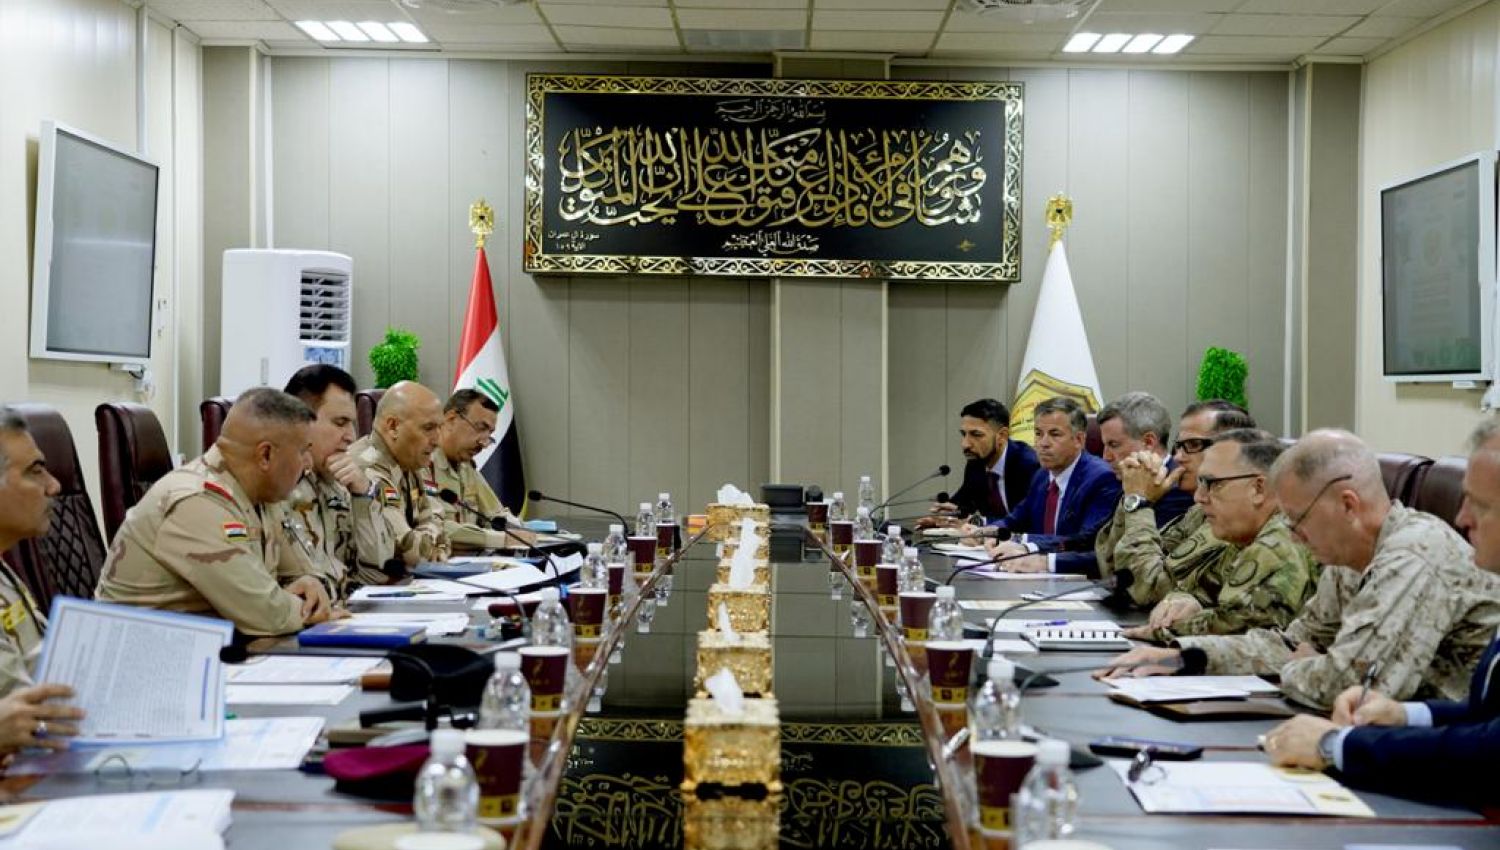 اللجان العراقية الأمريكية: اتفاق شراكة استراتيجية أم انسحاب للقوات الأميركية